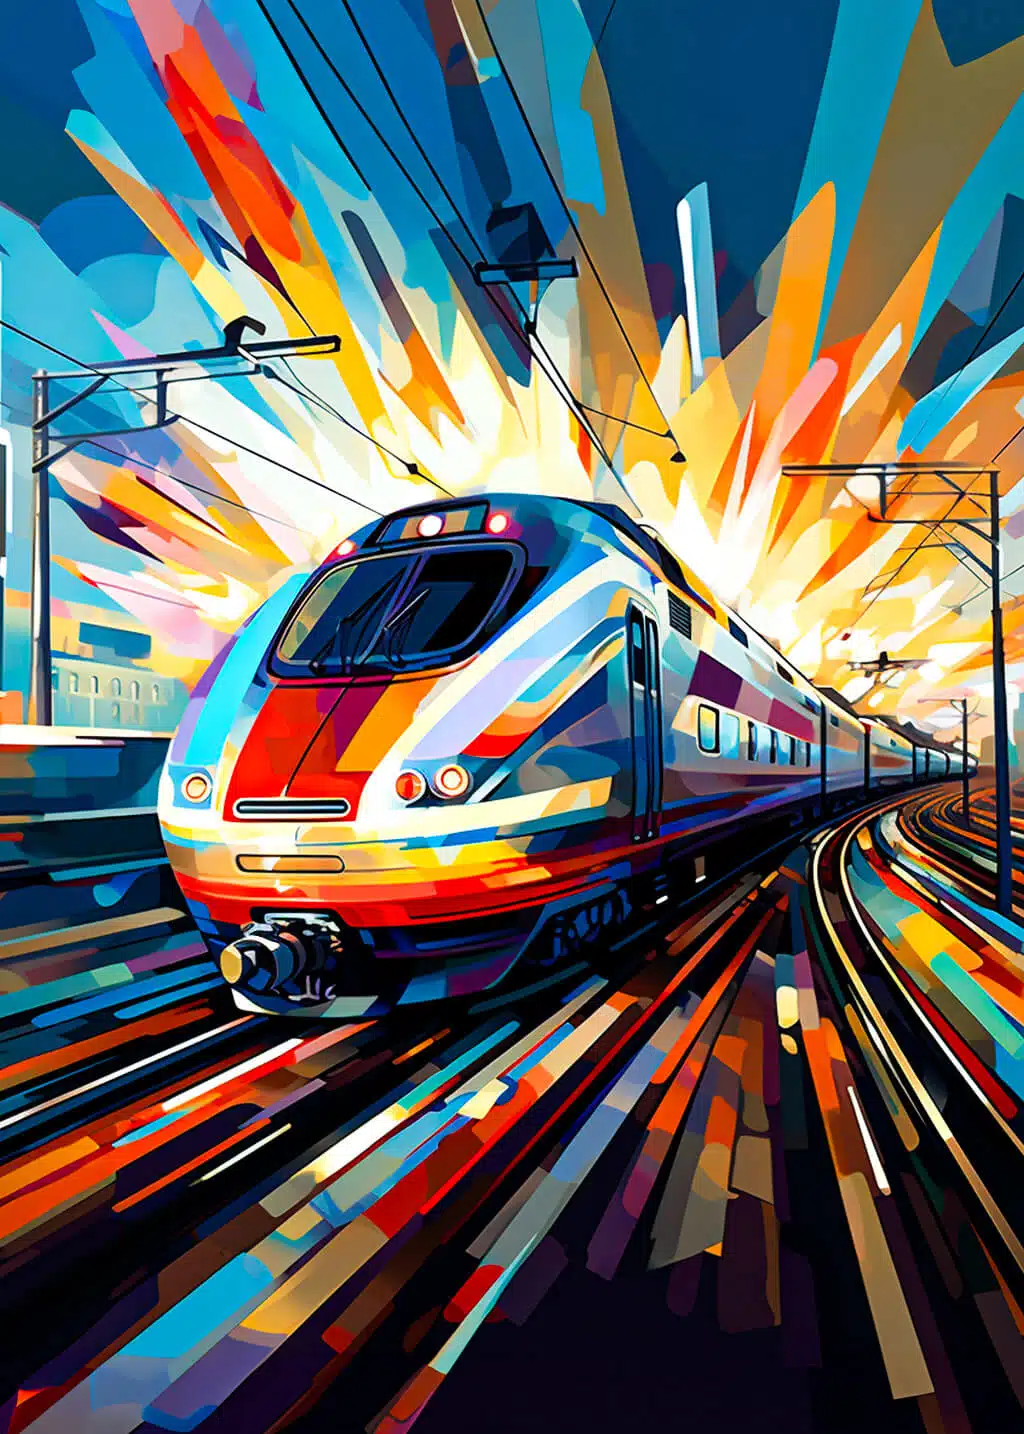 Futuristic train